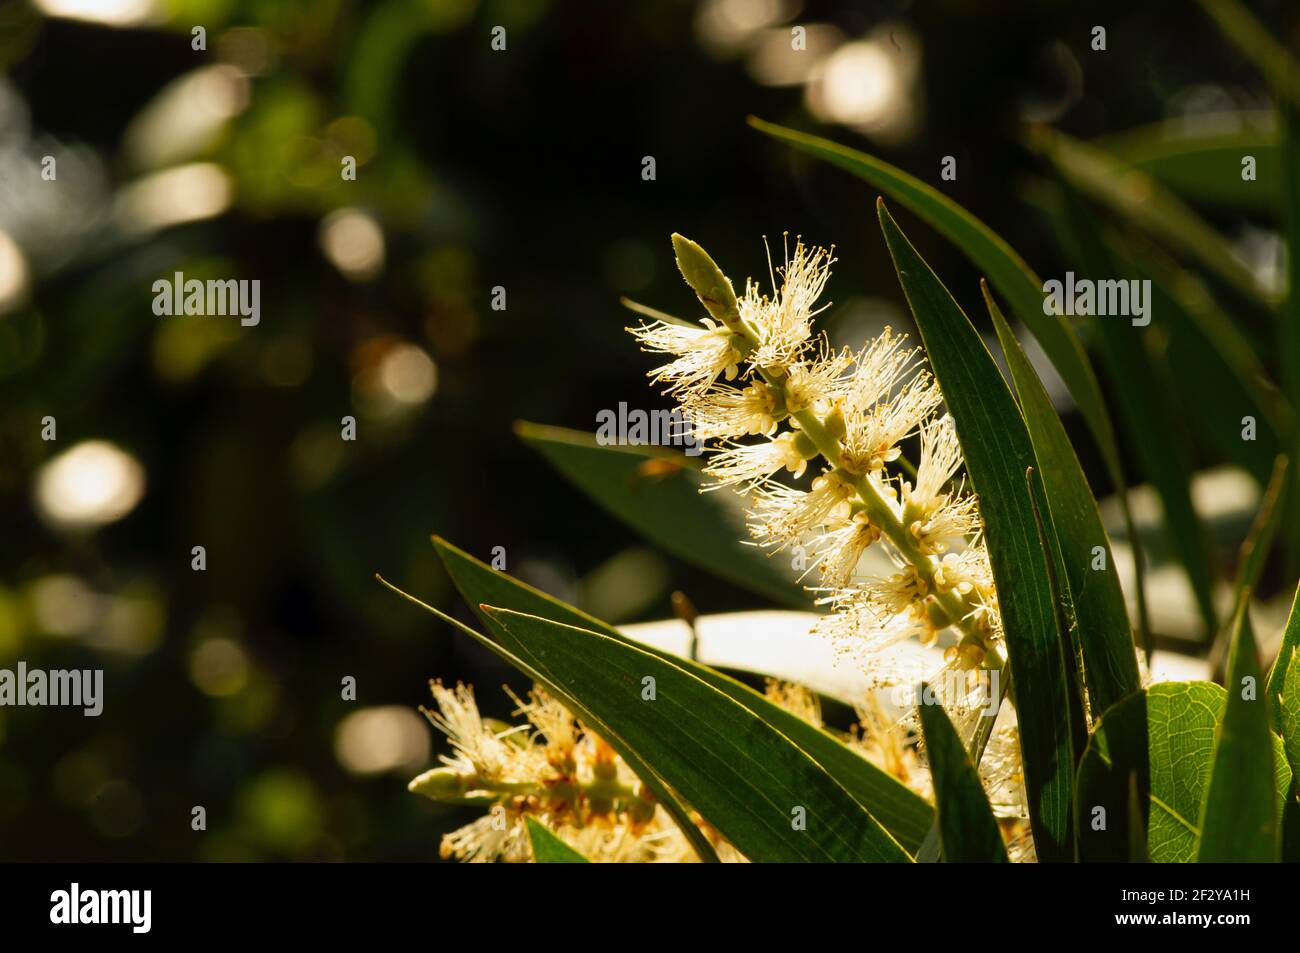 Melaleuca cajuputi Blume, in flachem Fokus, allgemein bekannt als cajuput. Cajuput-Öl ist ein flüchtiges Öl, das durch Destillation aus den Blättern von caju gewonnen wird Stockfoto